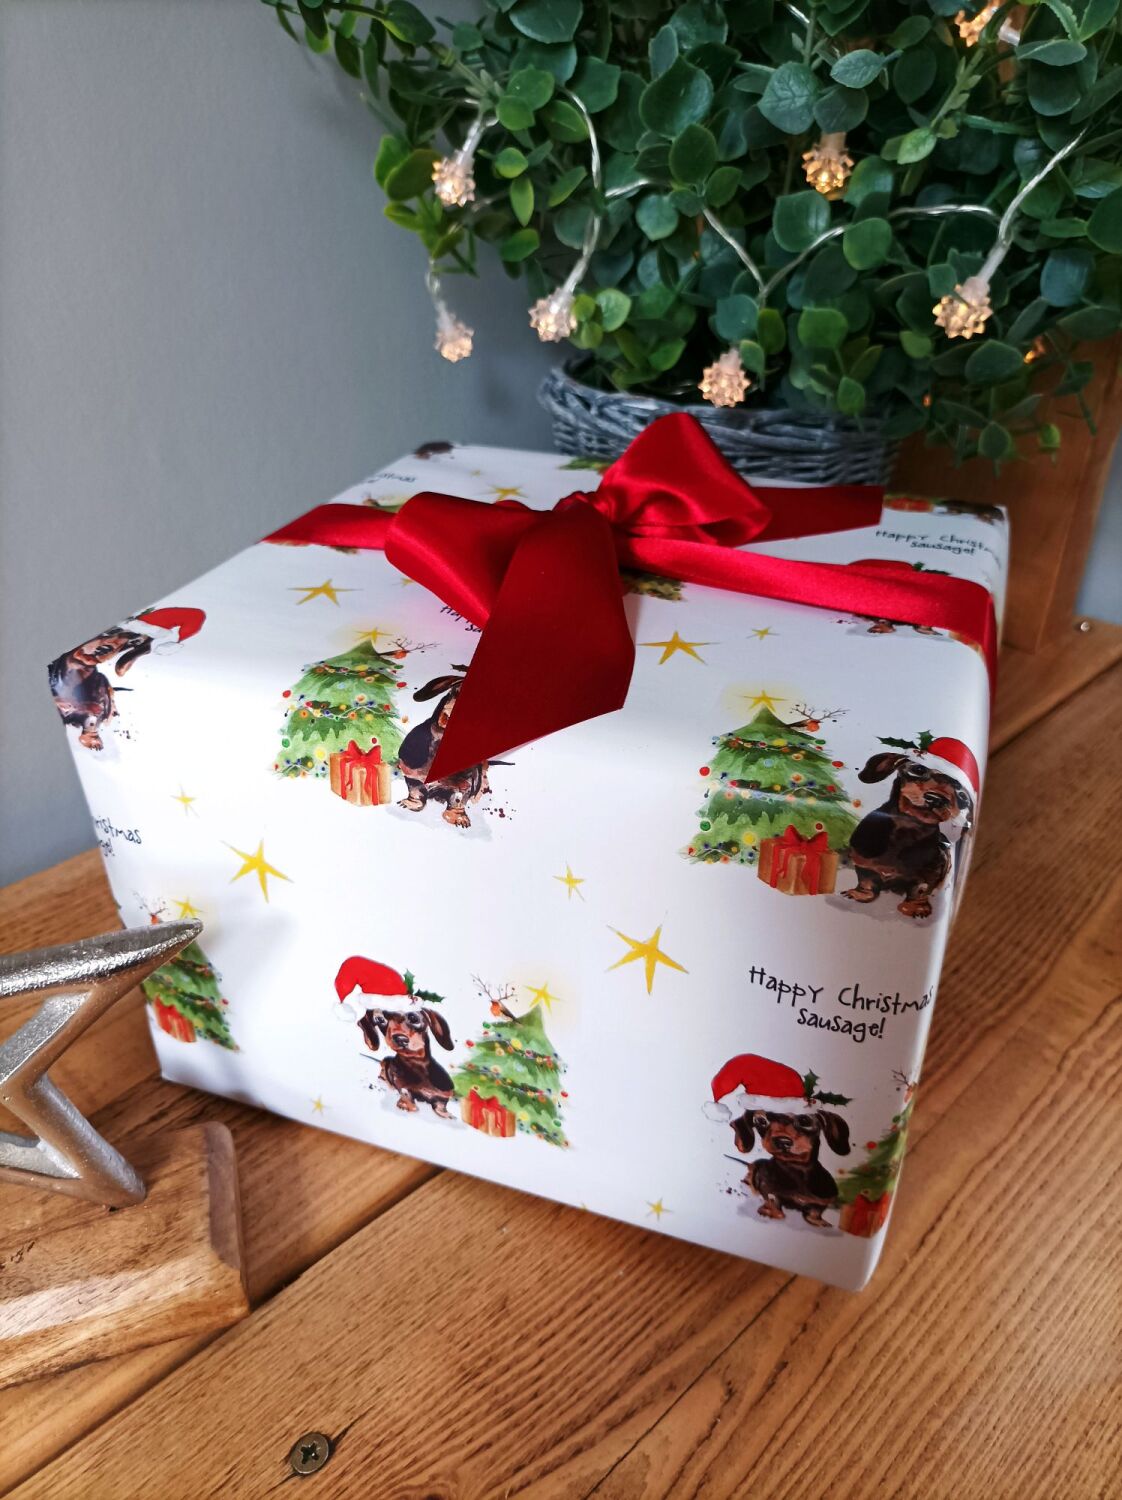 Happy Christmas Sausage! - Gift wrap